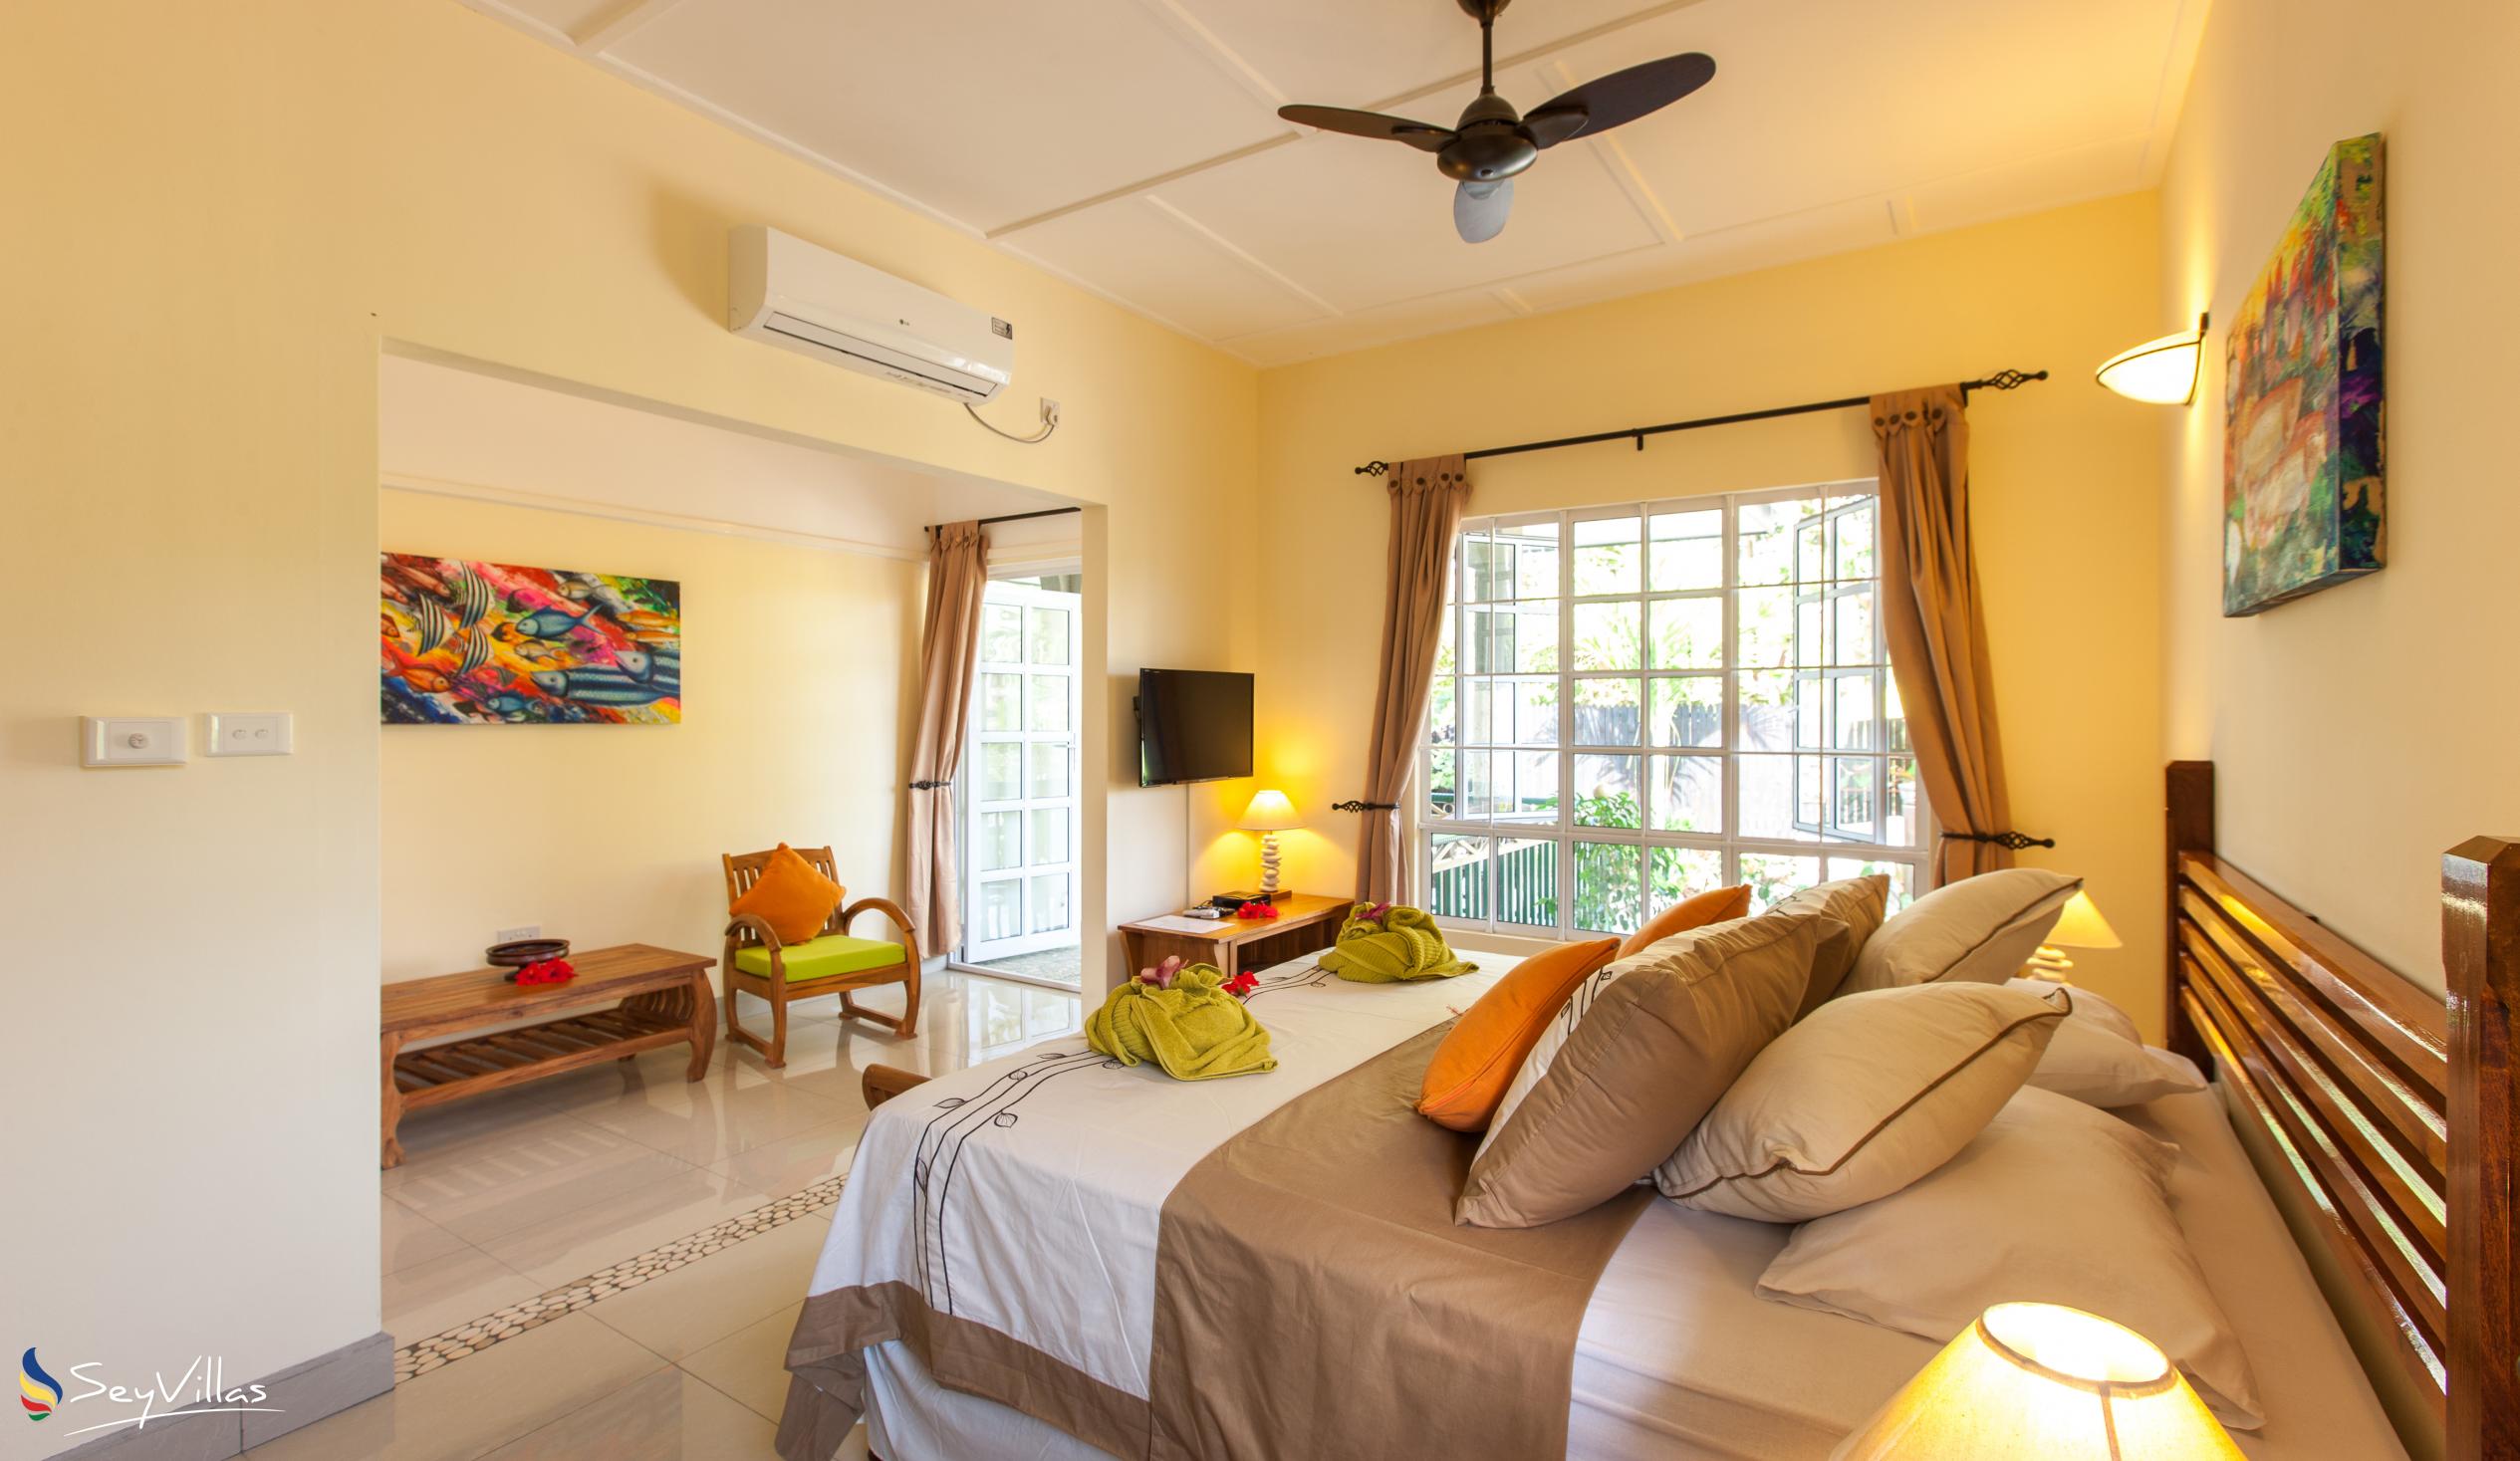 Foto 18: Maison Charme De L'ile - Garden View Apartment - La Digue (Seychellen)